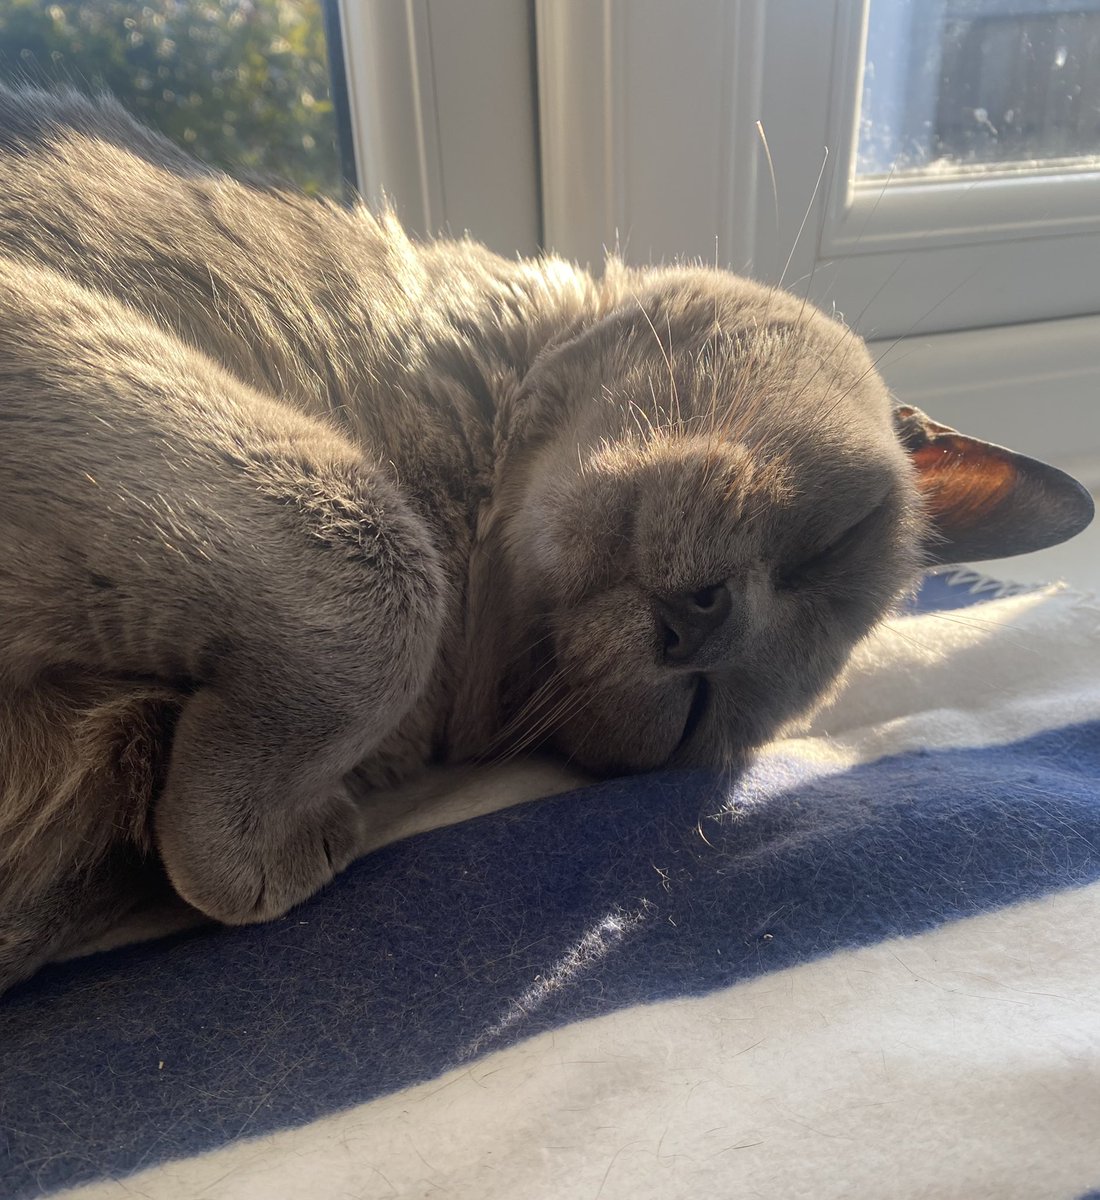 How’s your weekend going? Mine’s been….. 💤 

#CatsOfTwitter 
#SleepySaturday